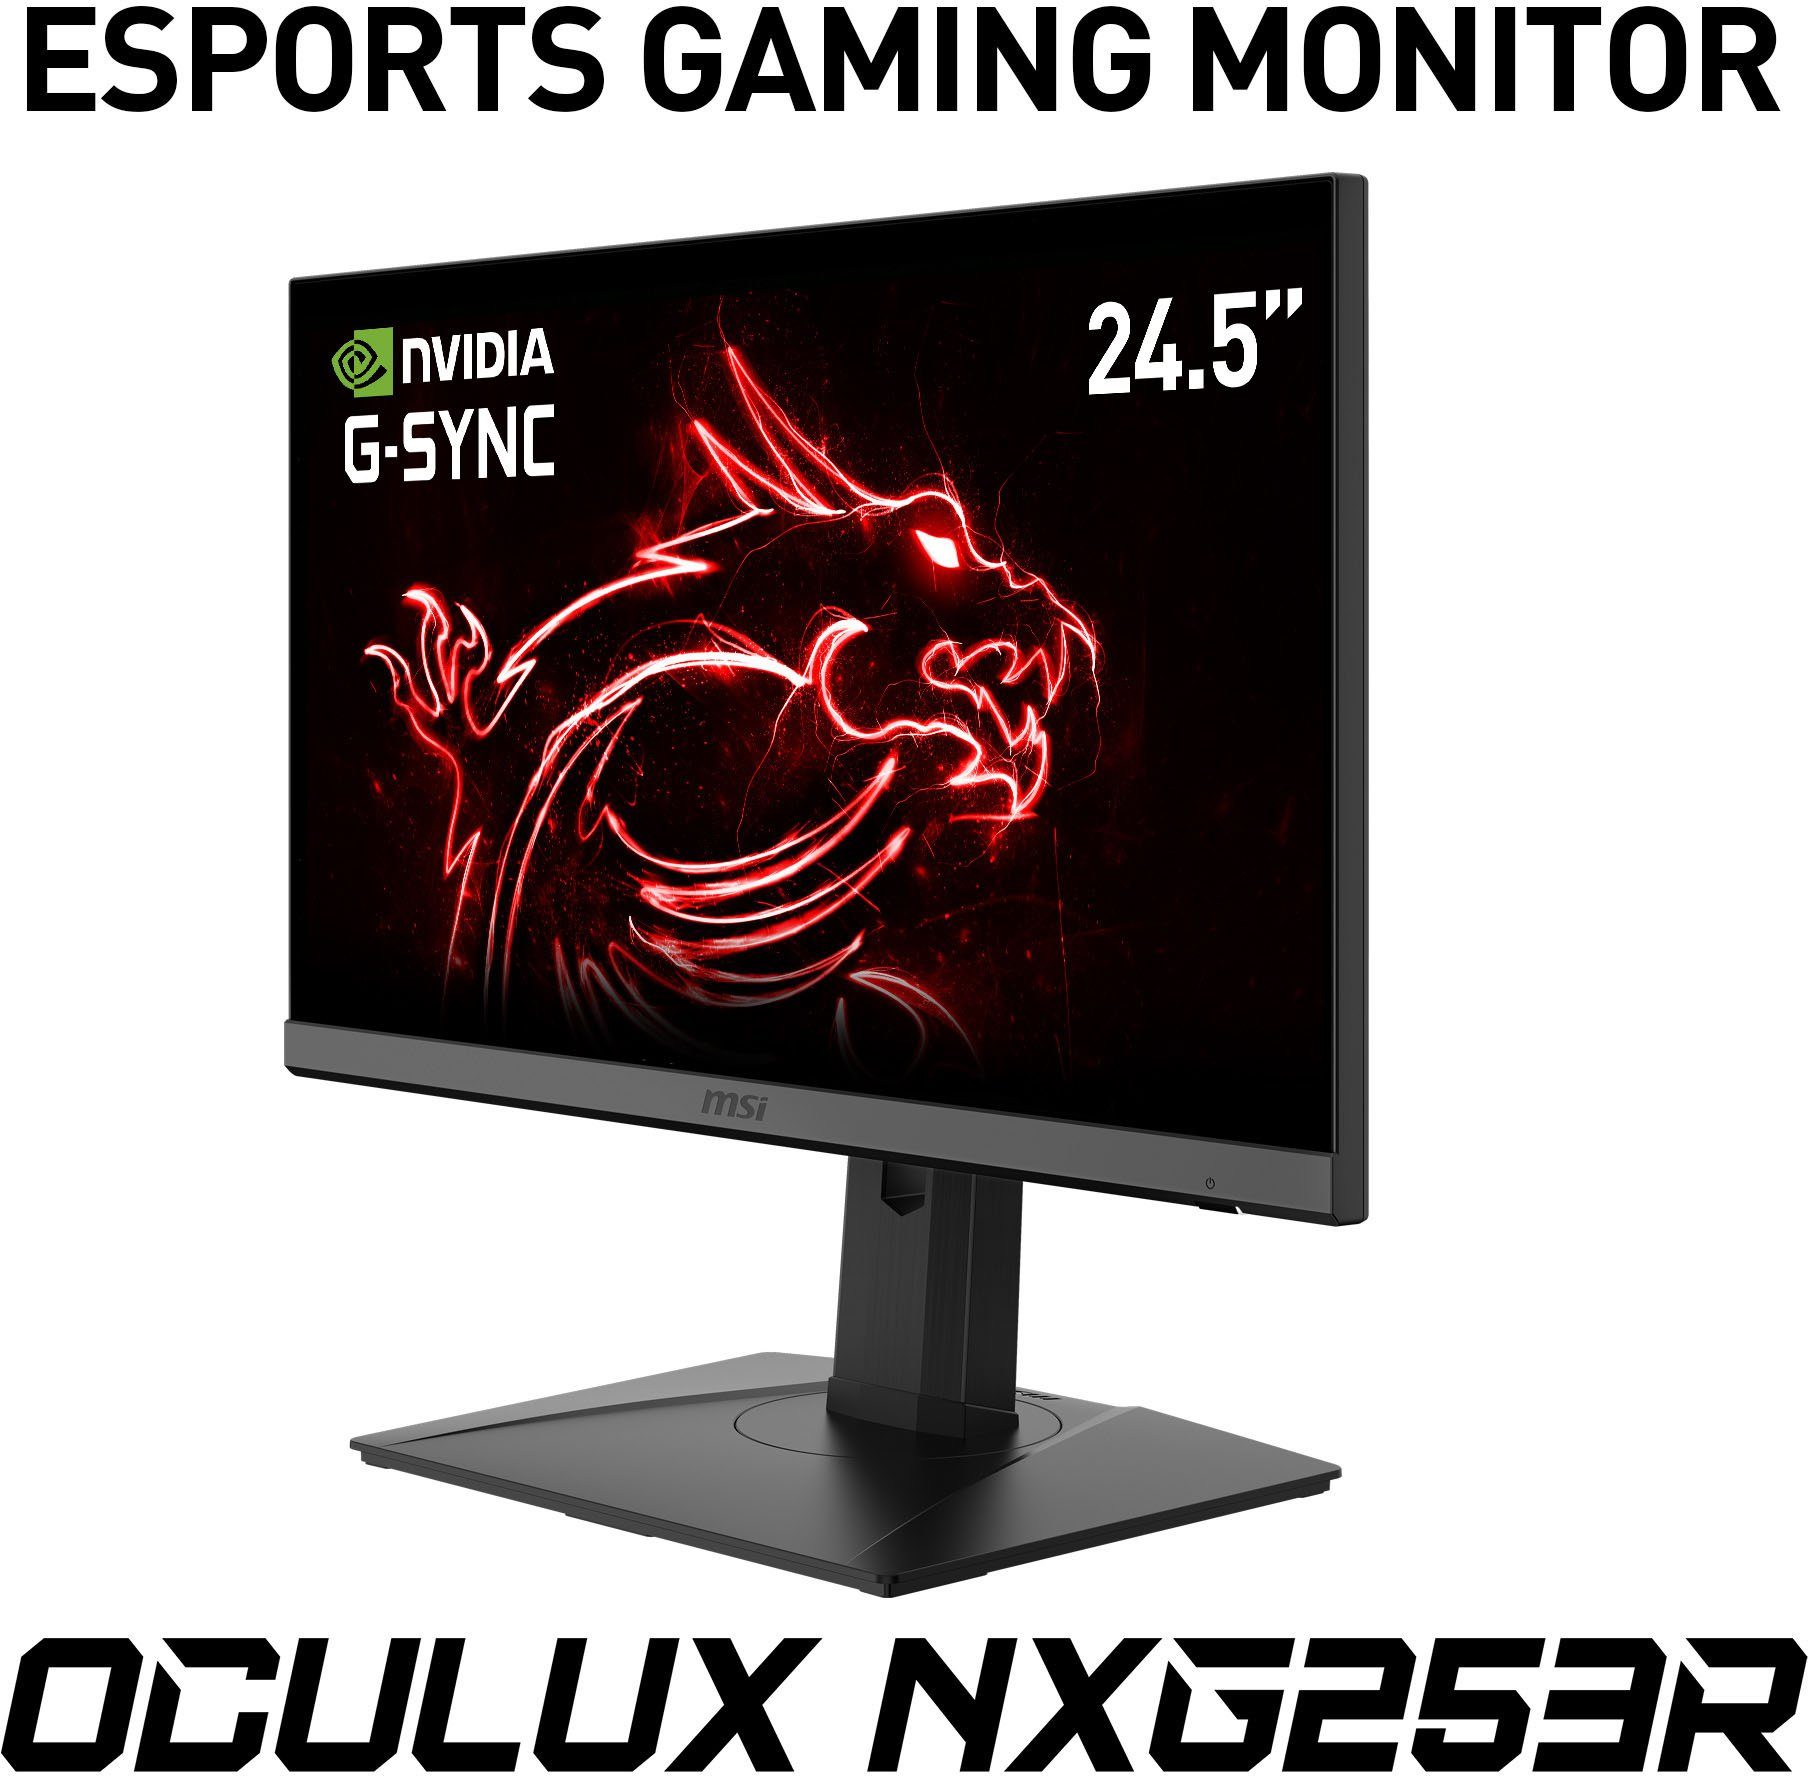 Gaming-LED-Monitor Rapid 1 E-Sports (62,2 1080 Reaktionszeit, ", Jahre NXG253R HD, MSI Hz, px, höhenverstellbar, Herstellergarantie) IPS, 3 360 1920 ms x Full Oculux cm/25